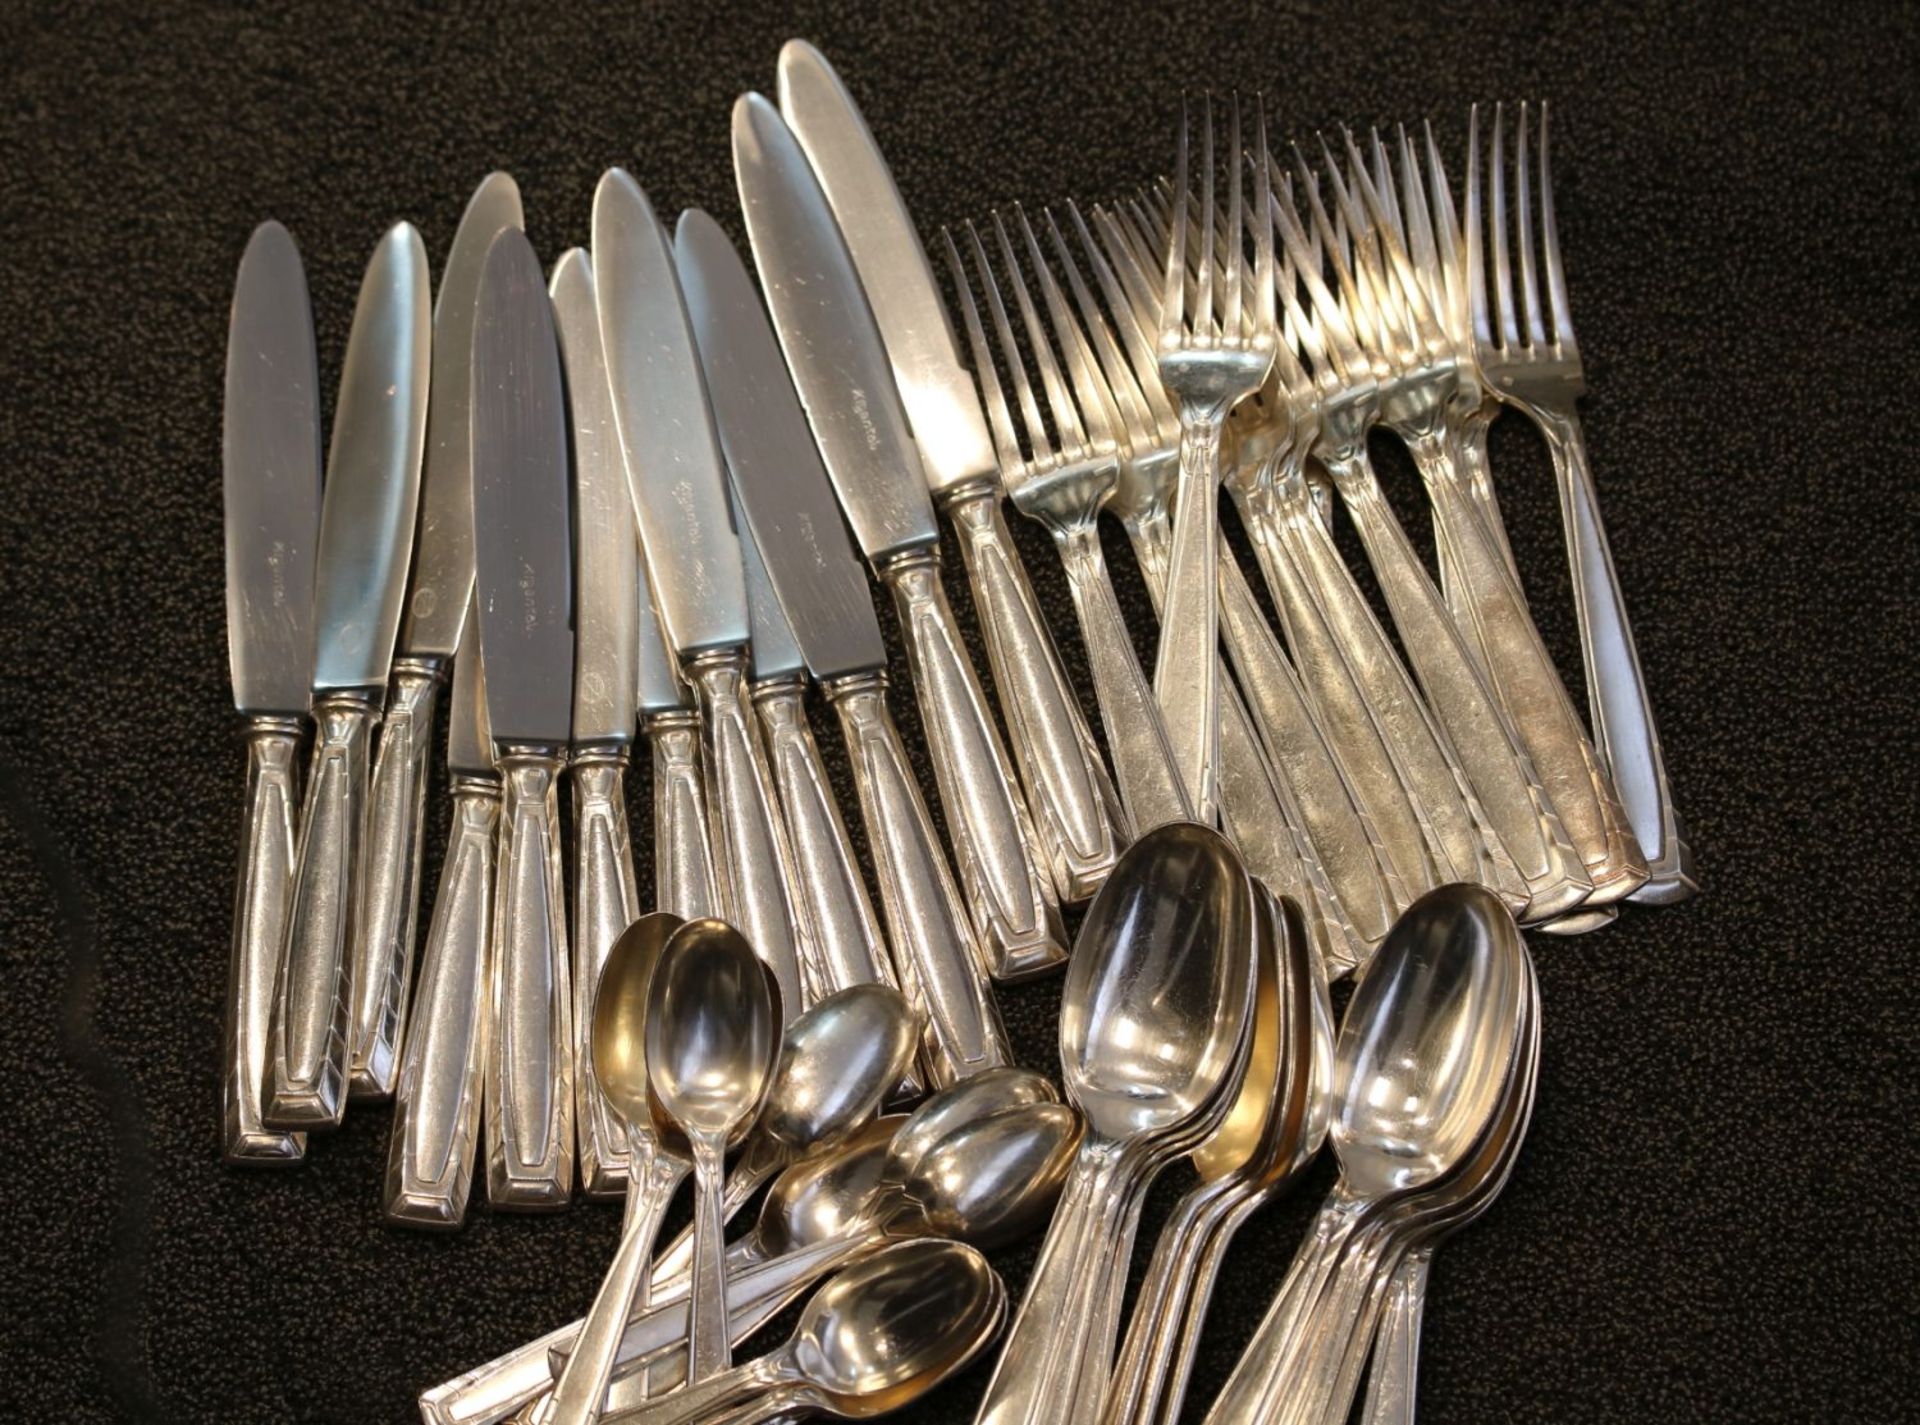 Besteck für 12 Personen, Silber2540 Gramm 12 Löffel, 12 Gabeln, 12 Suppenlöffel, 12 Messer nicht